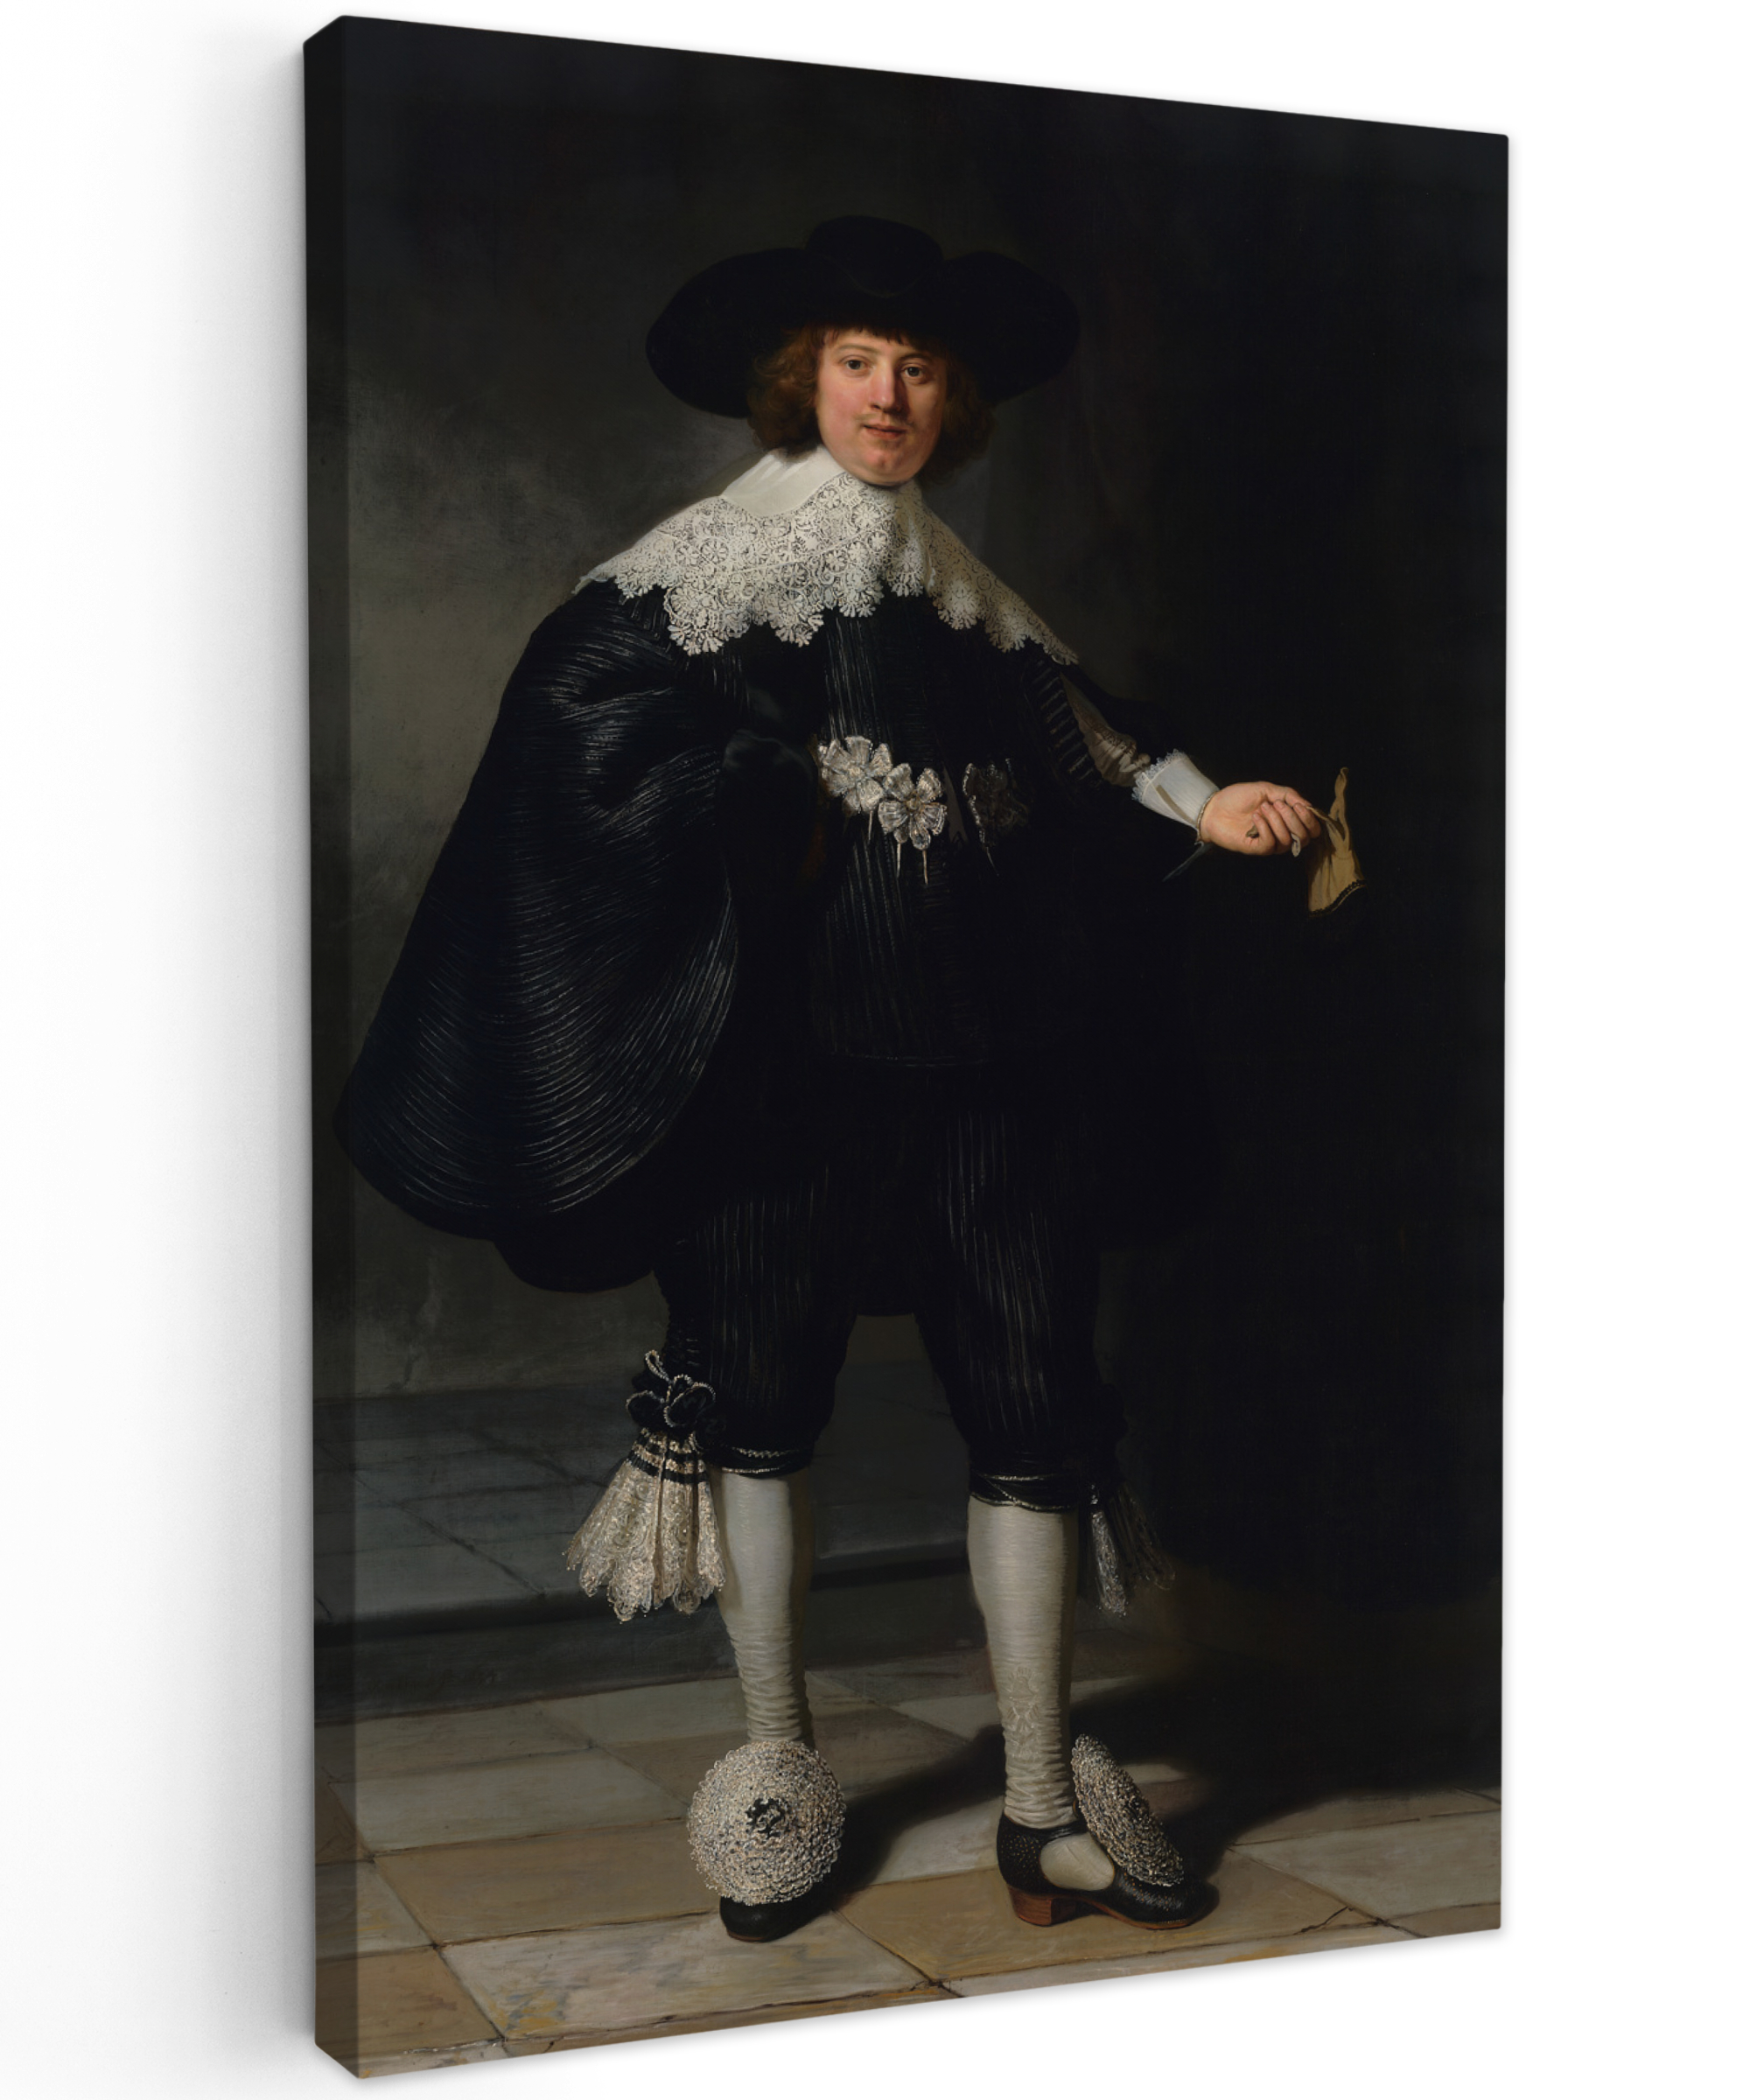 Tableau sur toile - Le portrait de mariage de Marten Soolmans - Rembrandt van Rijn